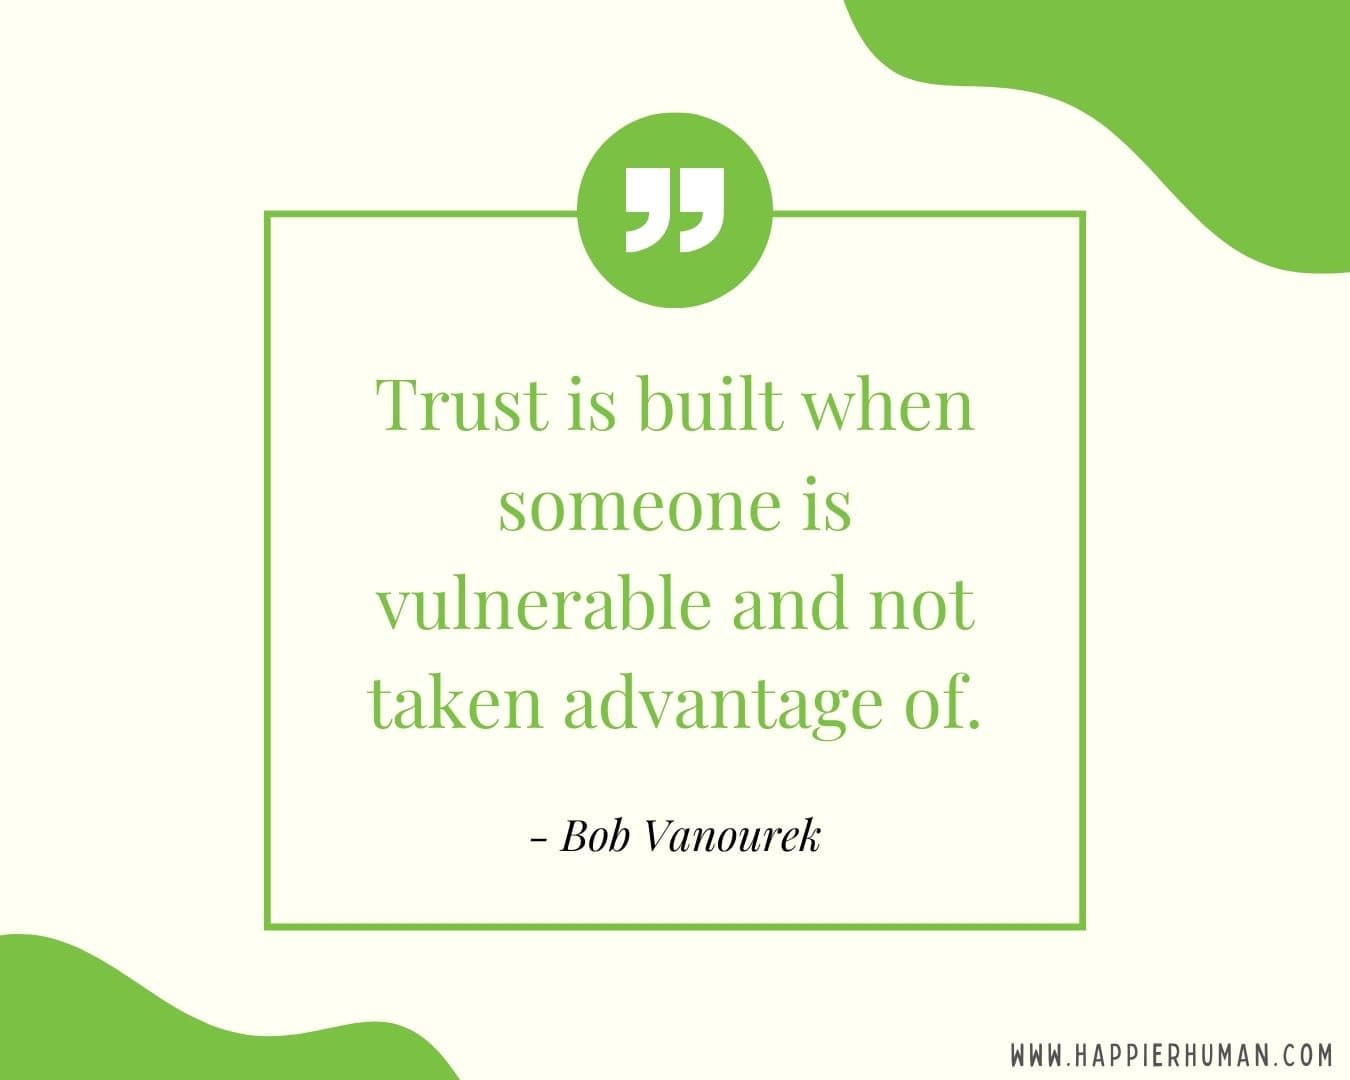 Broken Trust Quotes - “Trust is built when someone is vulnerable and not taken advantage of.” - Bob Vanourek